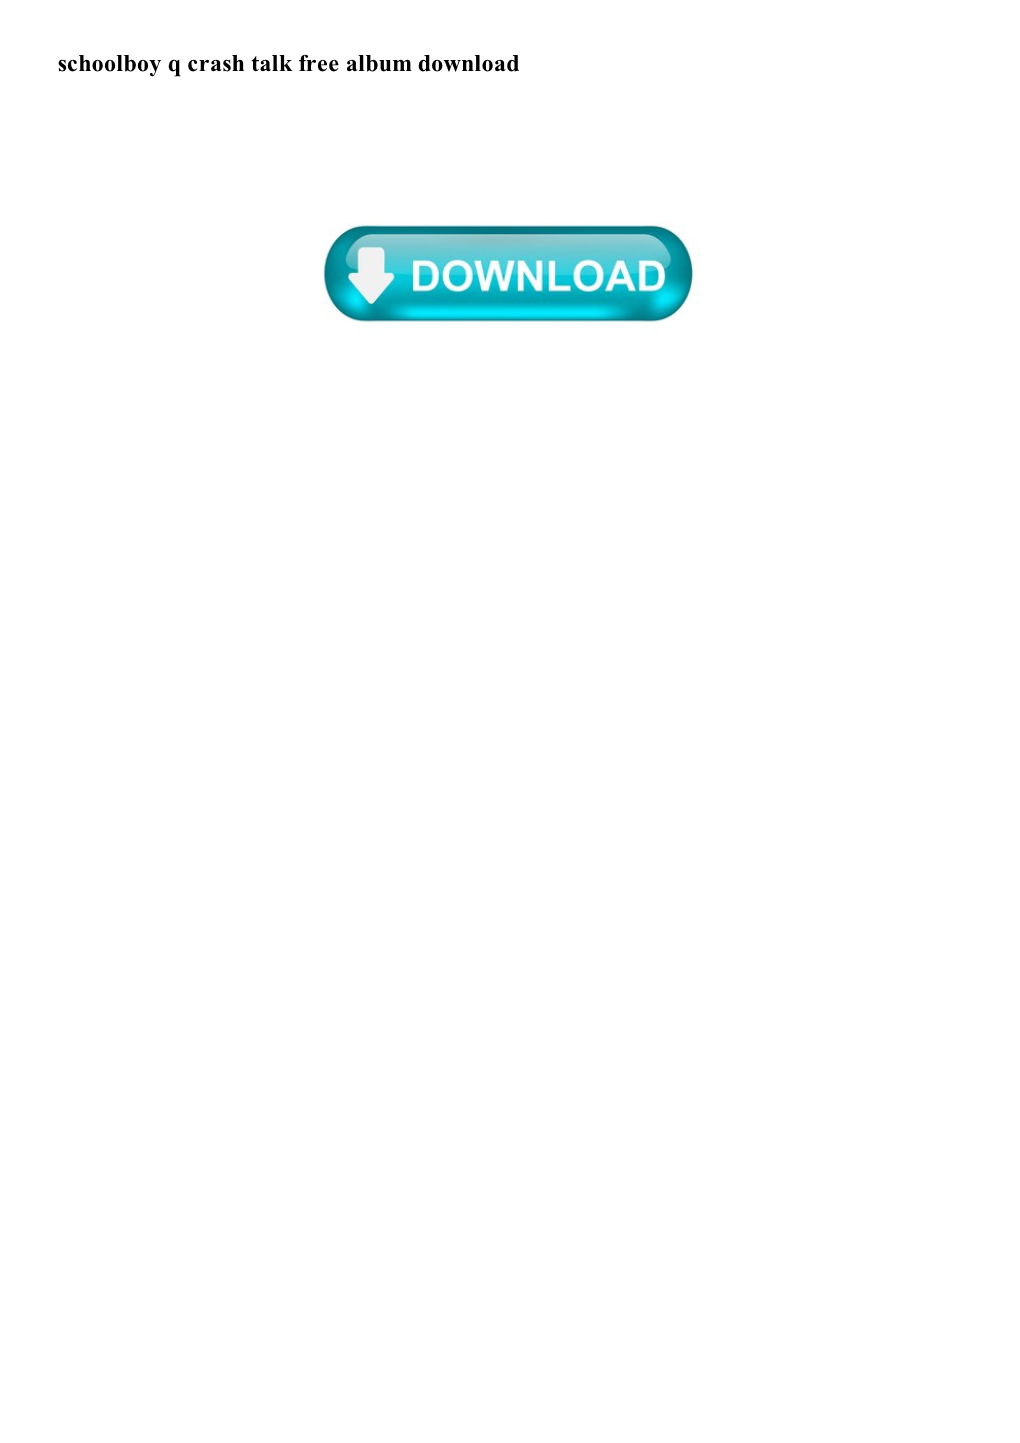 Schoolboy Q Crash Talk Free Album Download Schoolboy Q Crash Talk Free Album Download